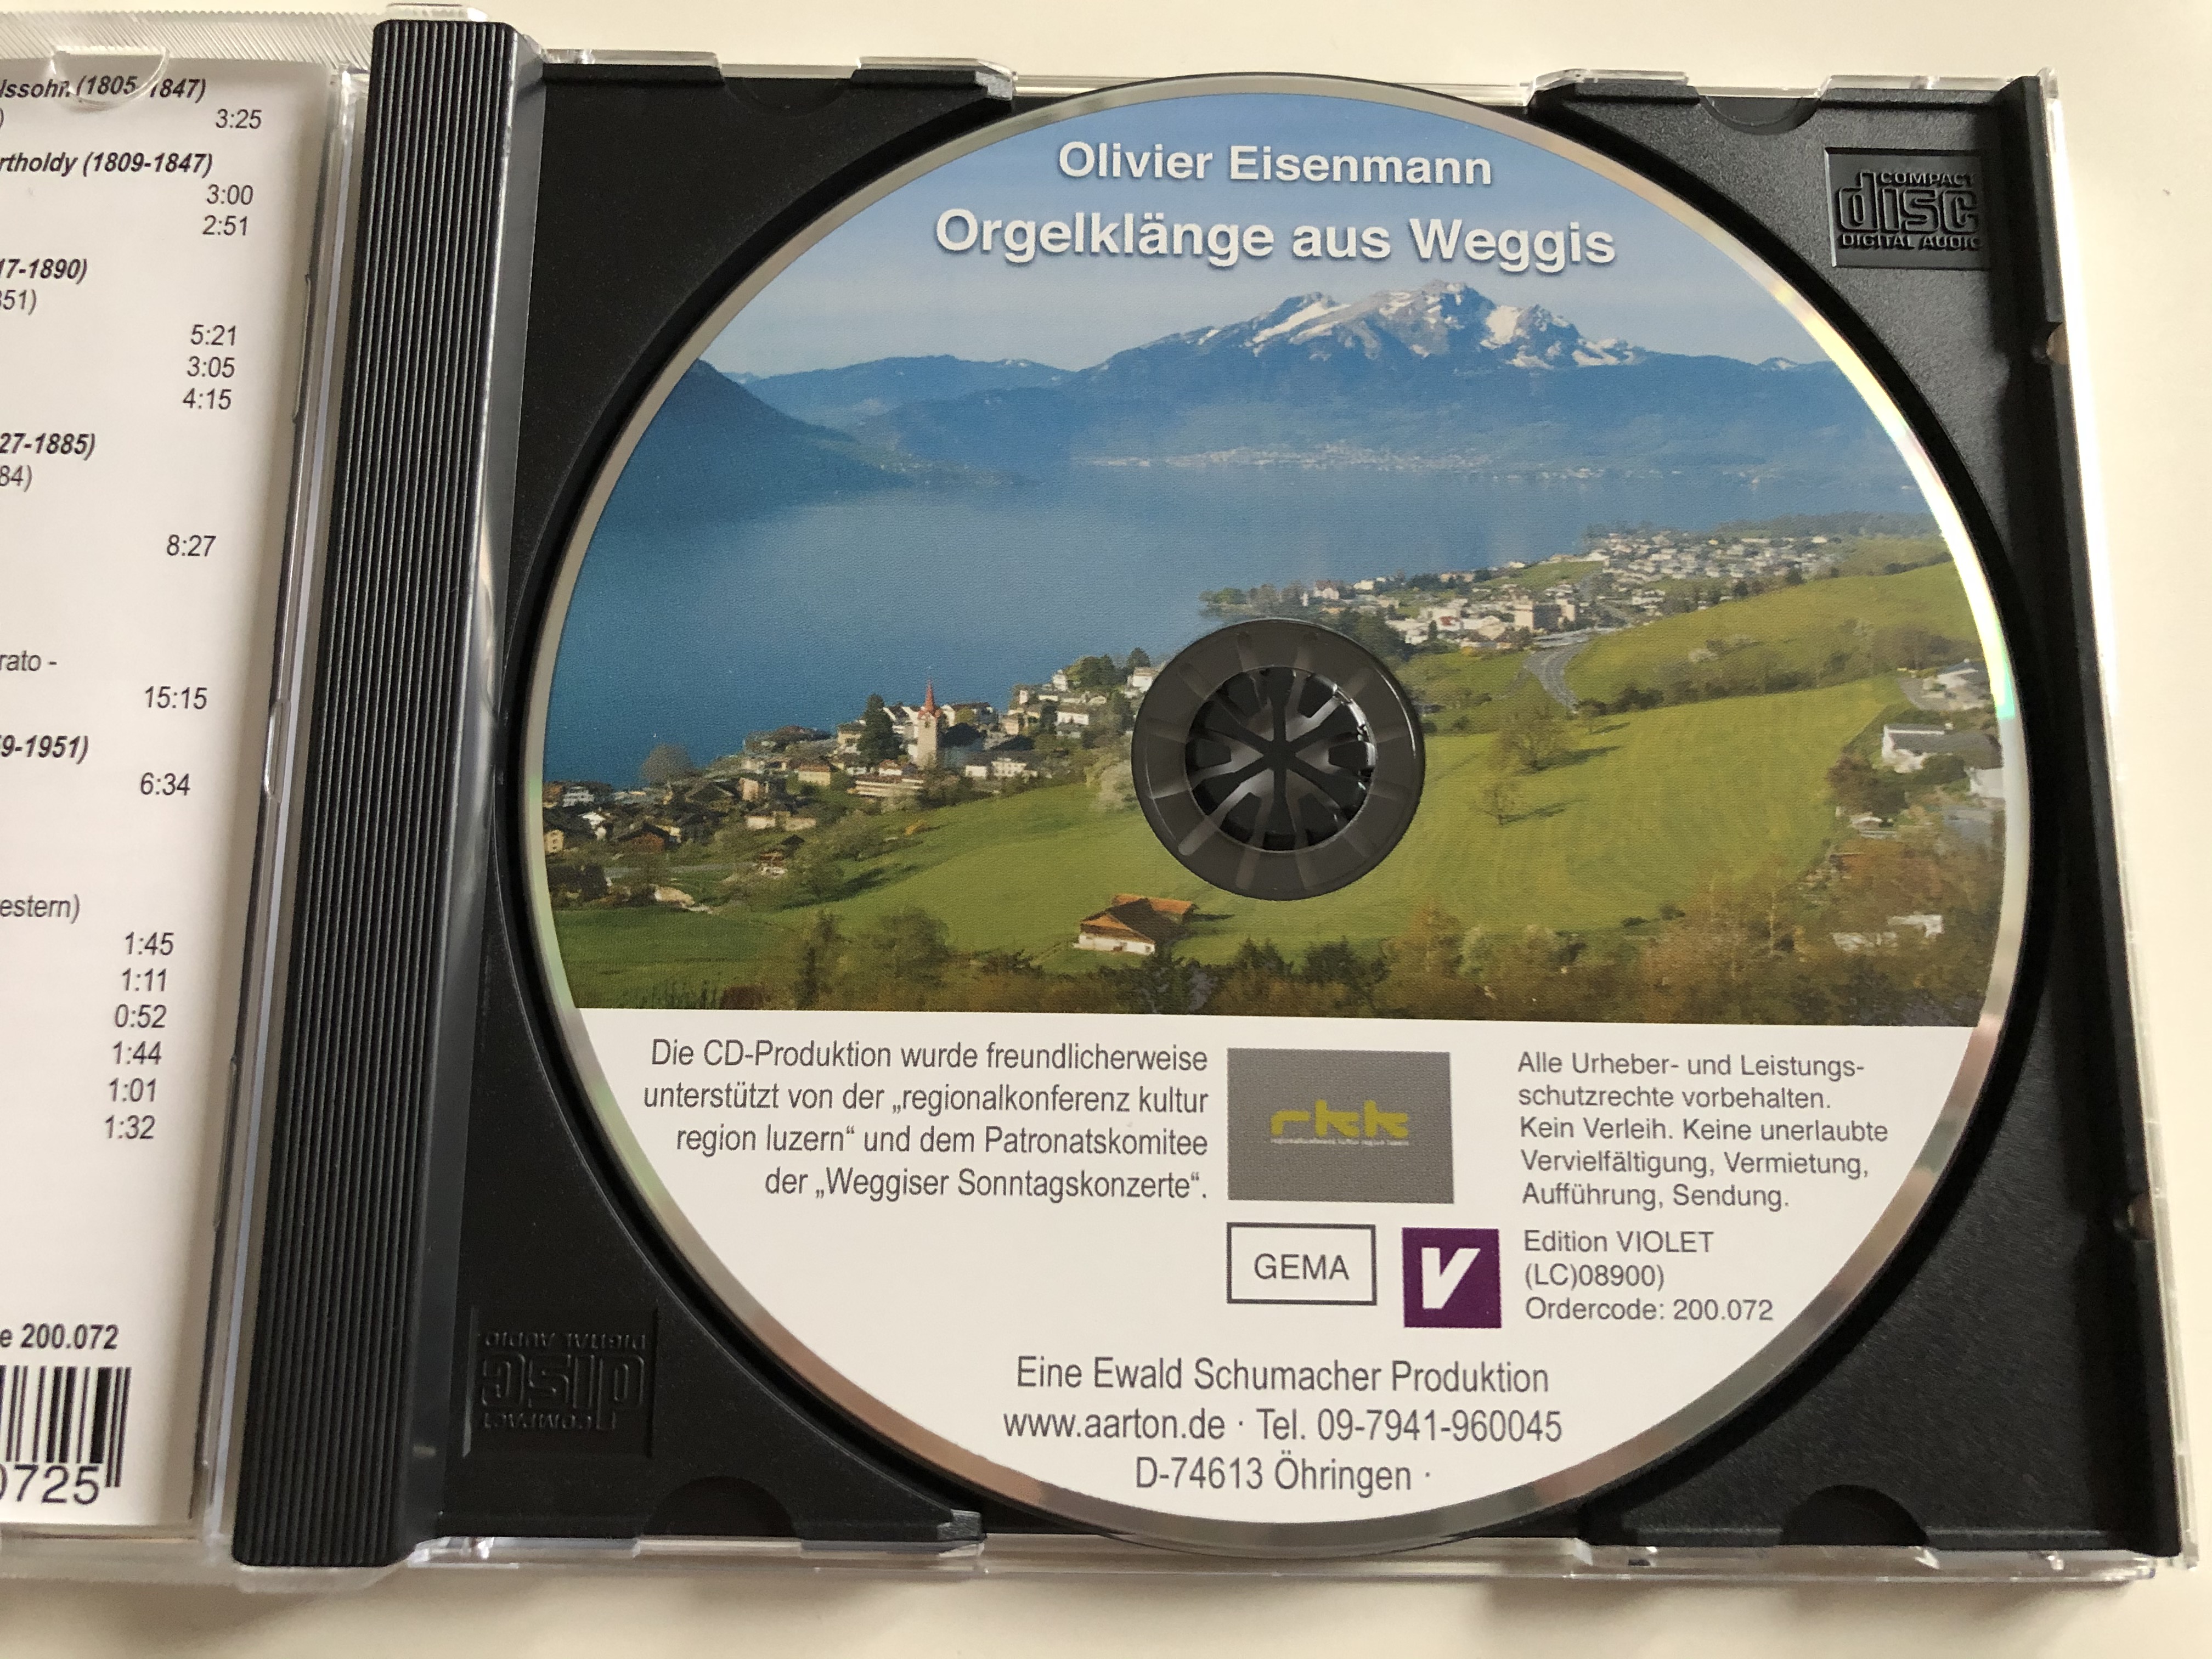 olivier-eisenmann-orgelklange-aus-weggis-edition-violet-audio-cd-2014-200-072-6-.jpg